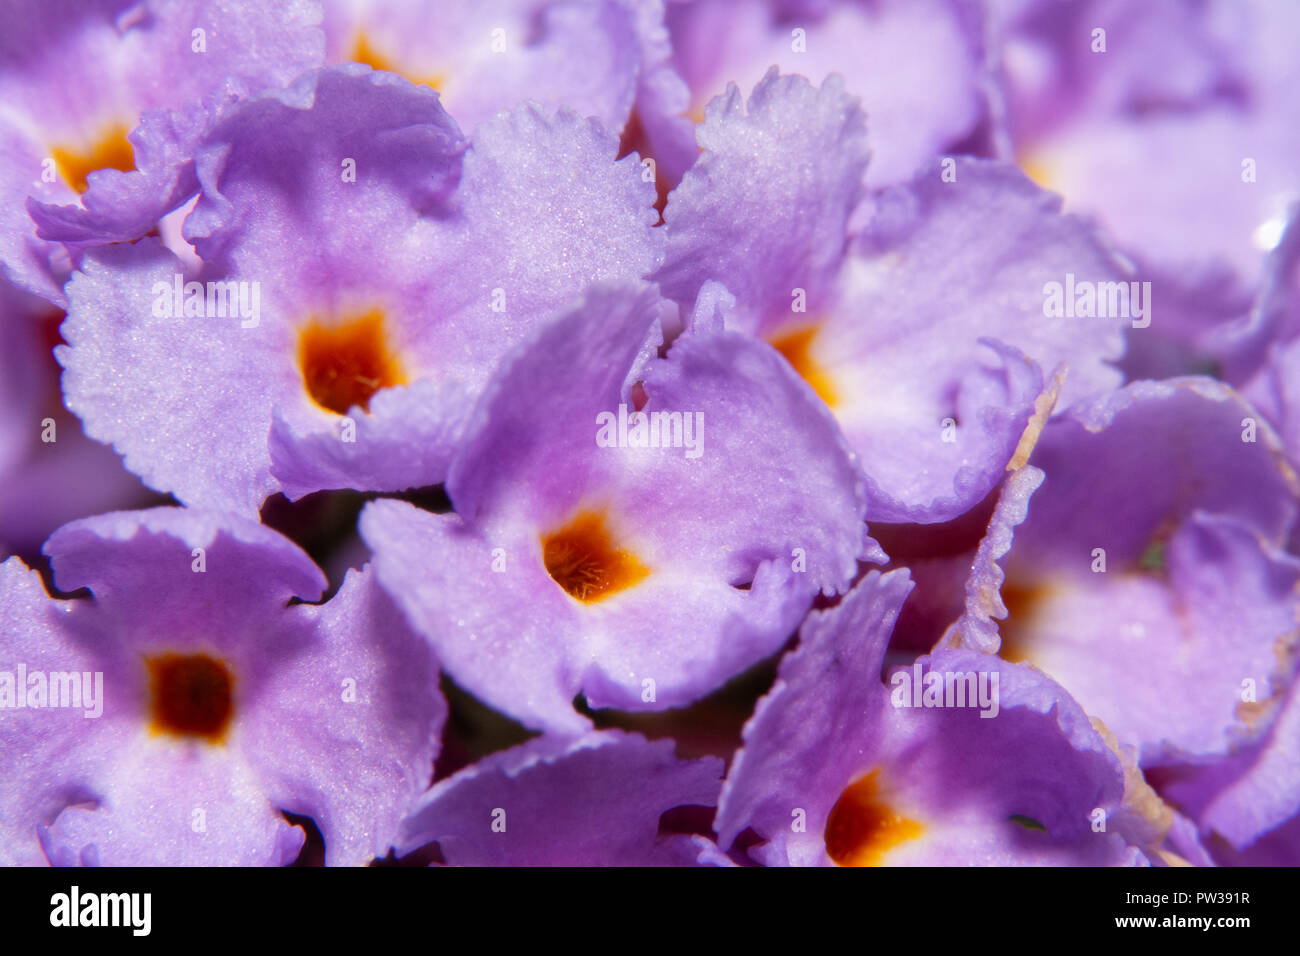 Primo piano della violetta Butterfly bush, Buddleia davidii, flower cluster Foto Stock